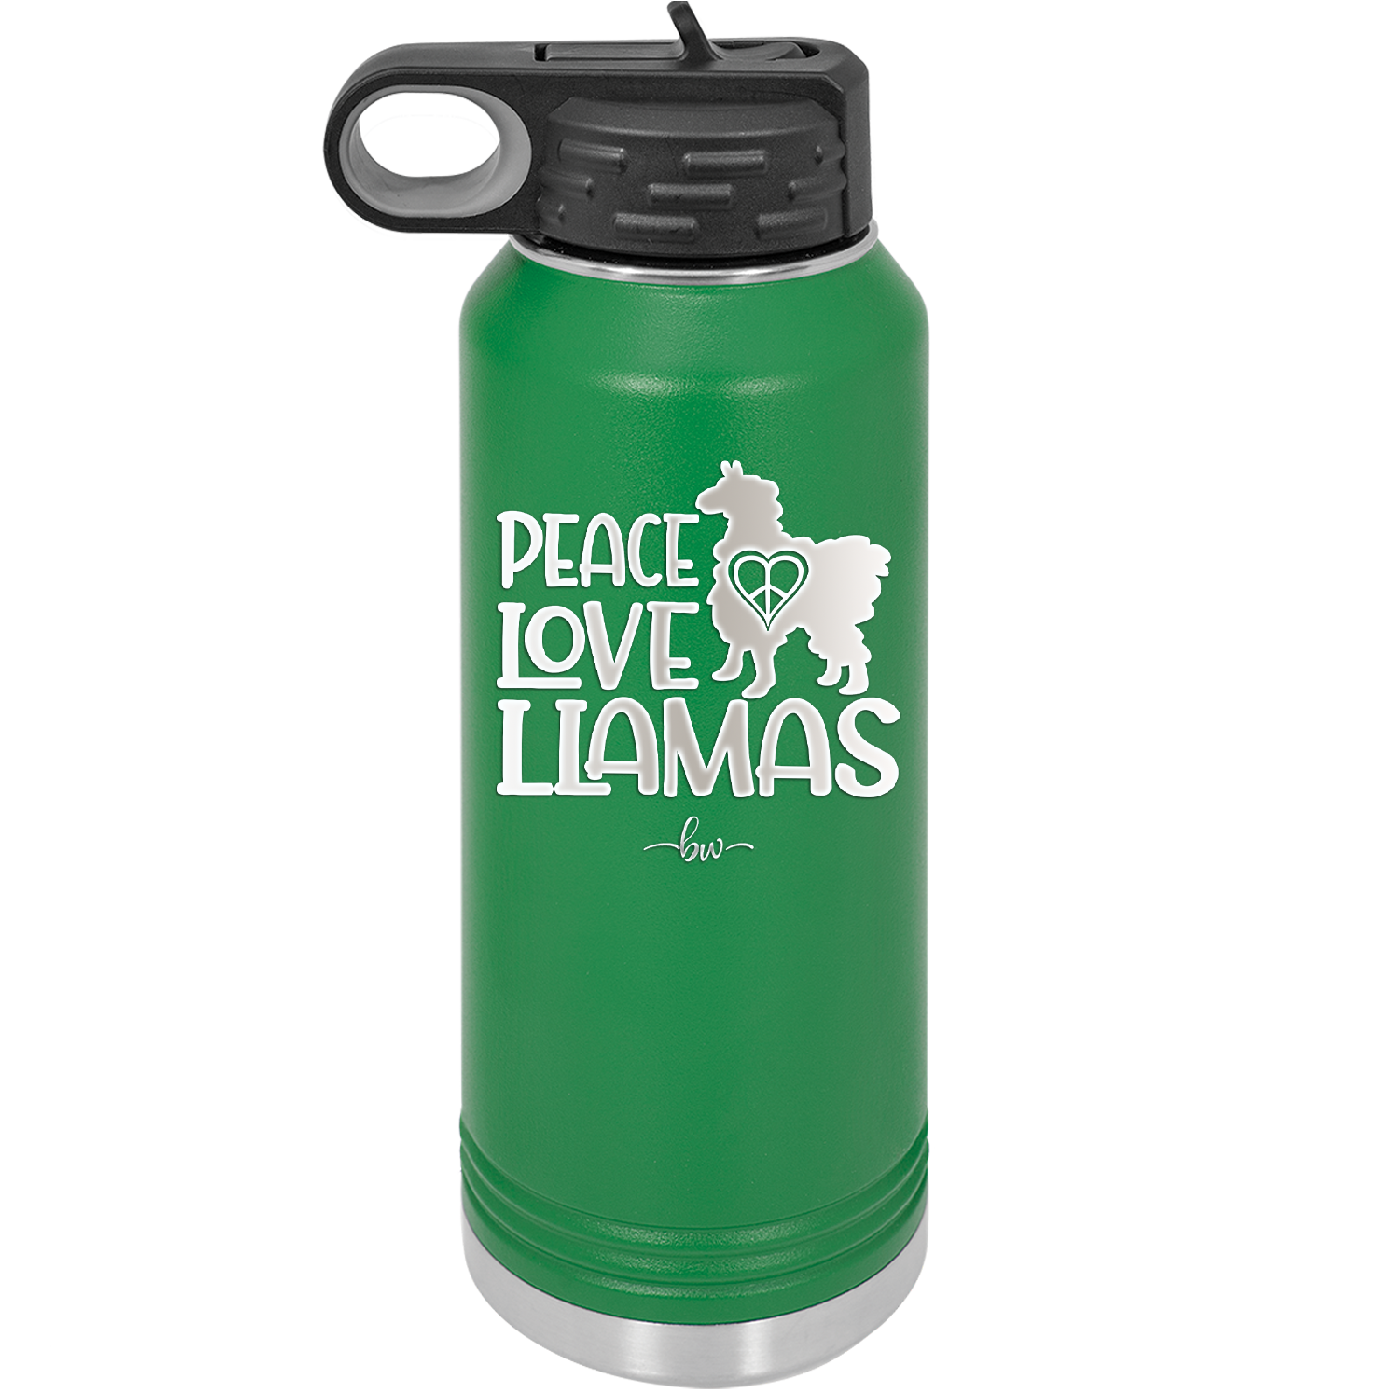 Peace Love Llamas - Laser Engraved Stainless Steel Drinkware - 1870 -